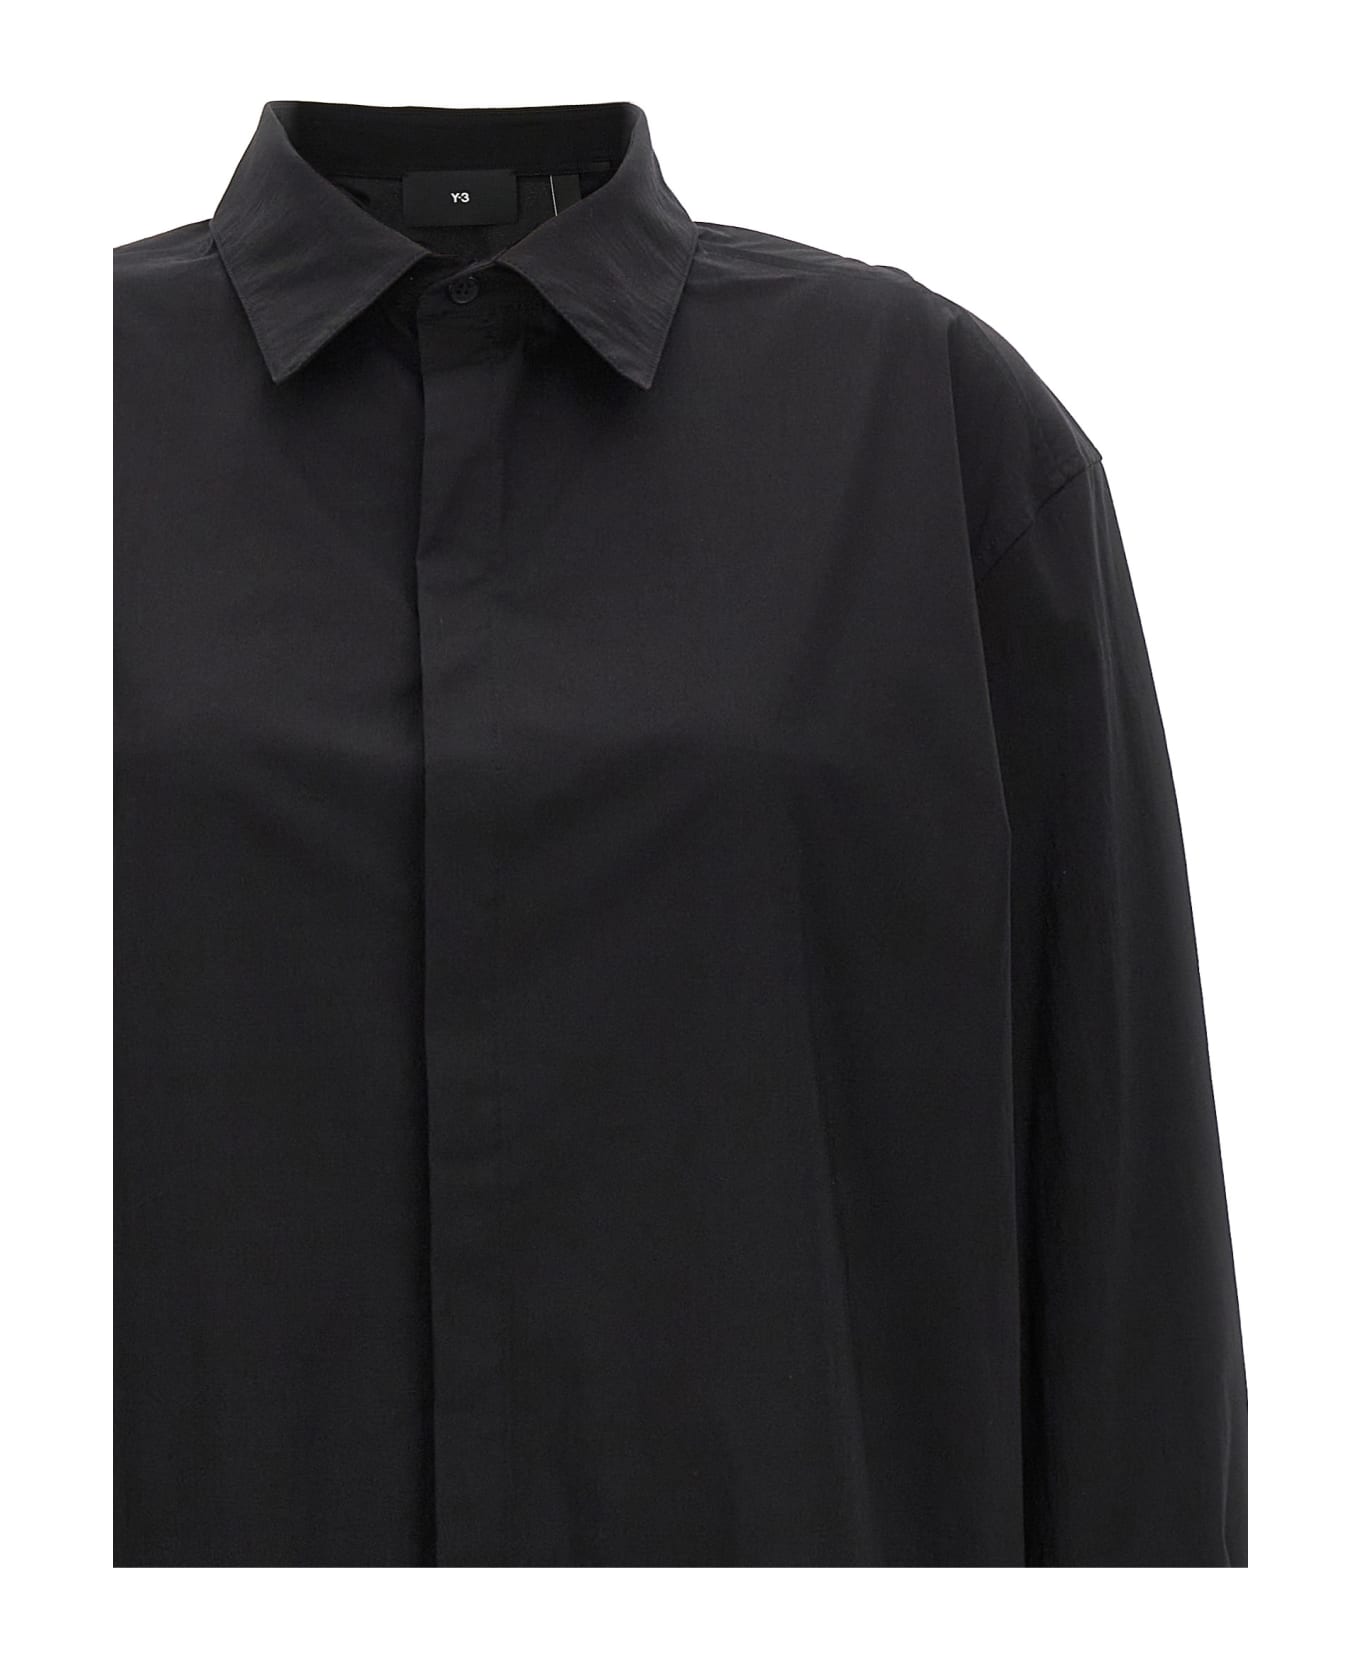 Y-3 Midi Shirt Dress - Black  